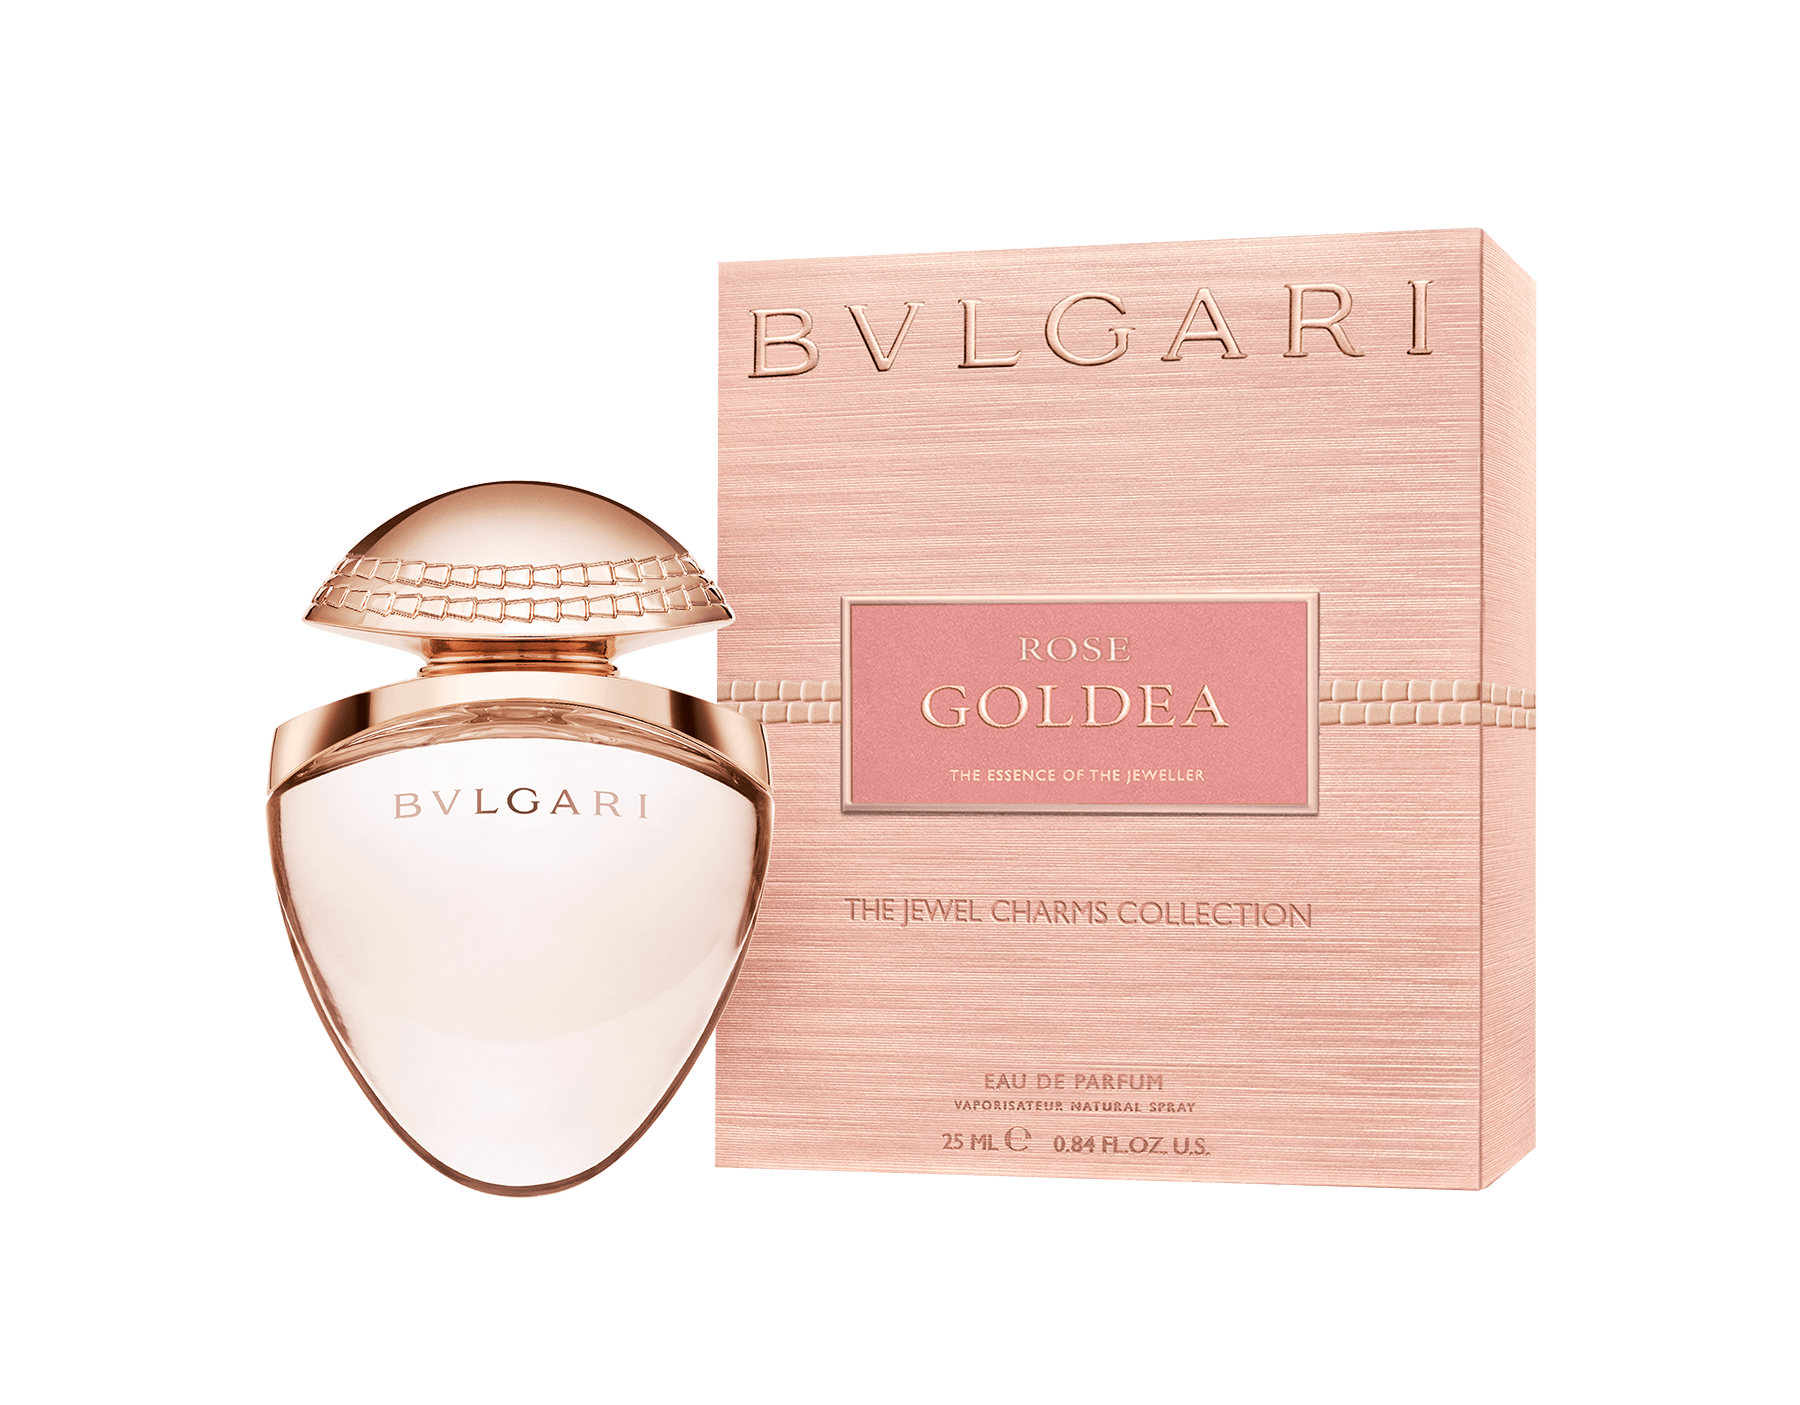 bulgari parfum rose